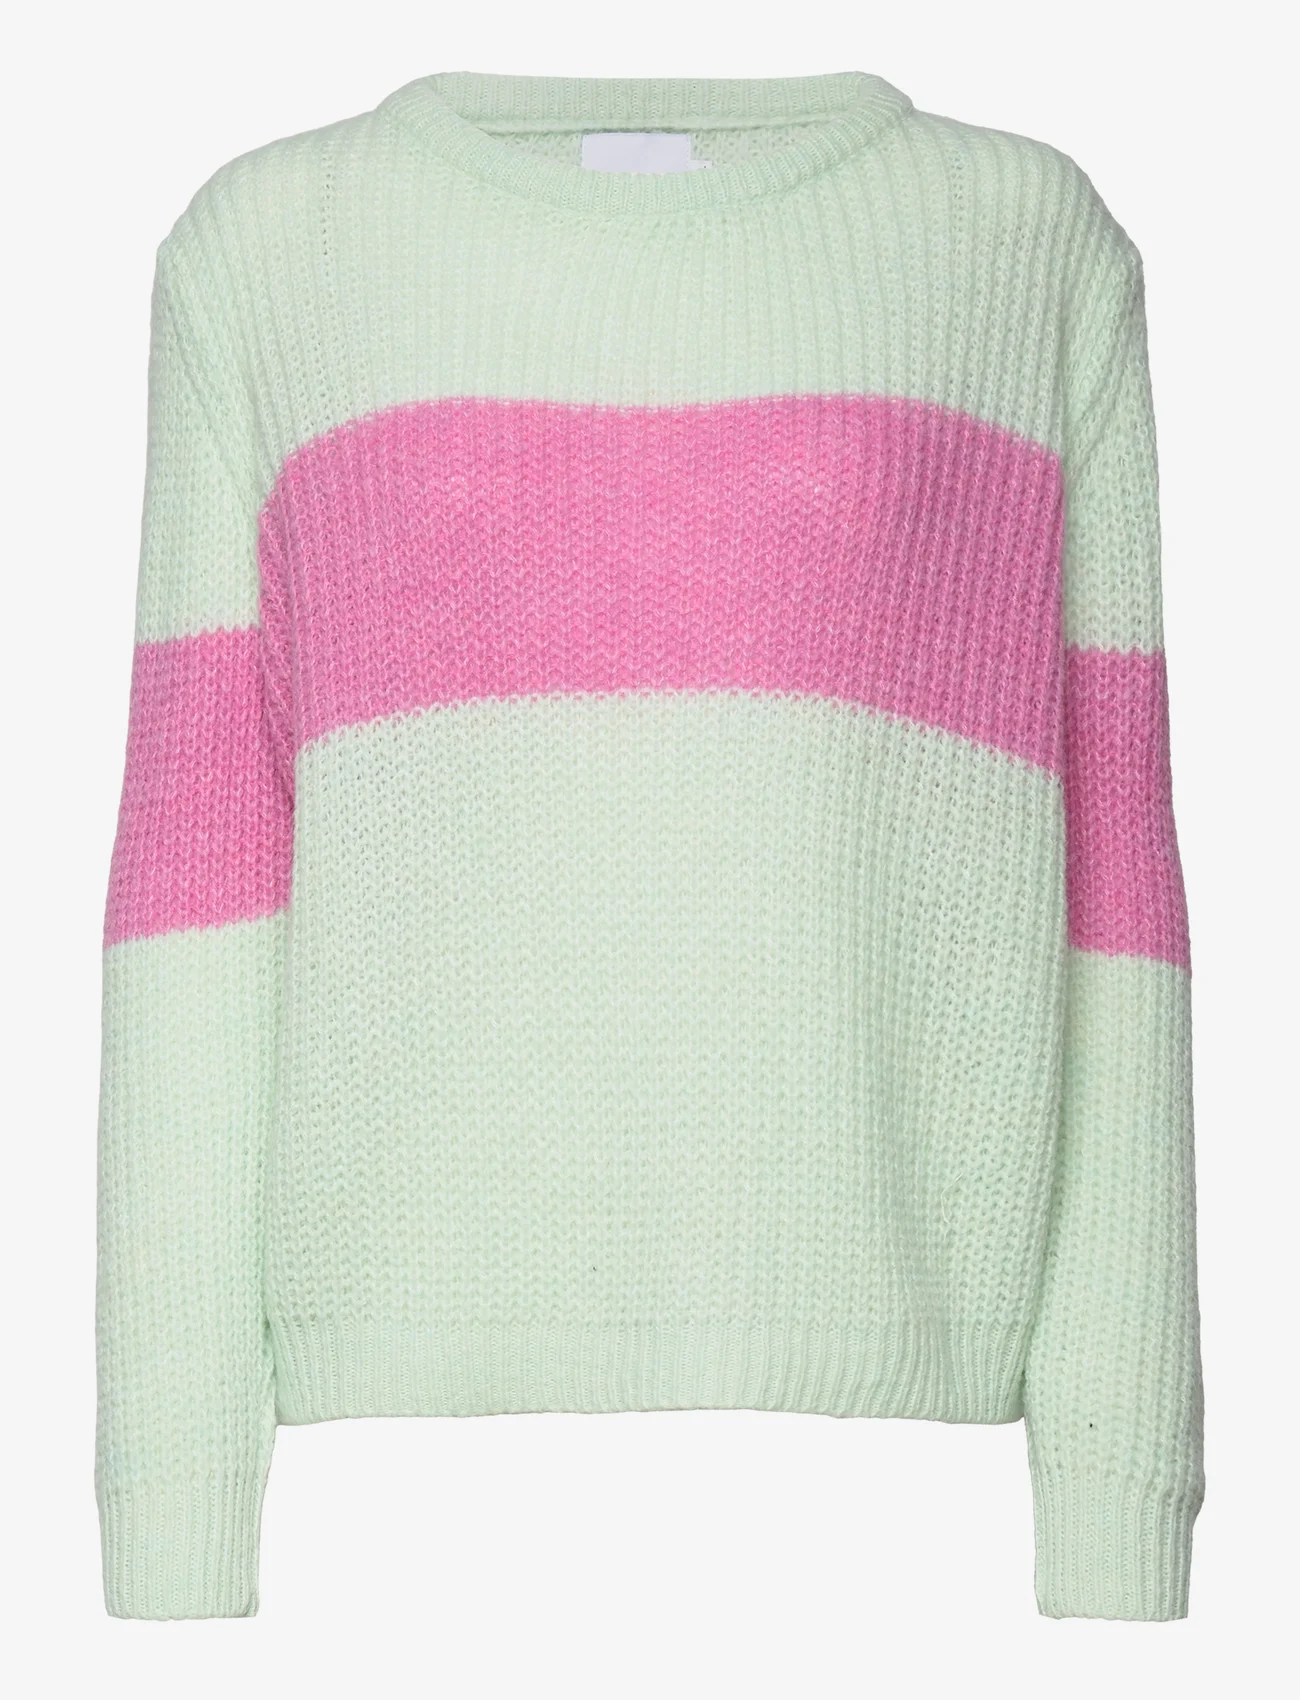 Noella - Mia Knit Sweater - mint/pink mix - 0